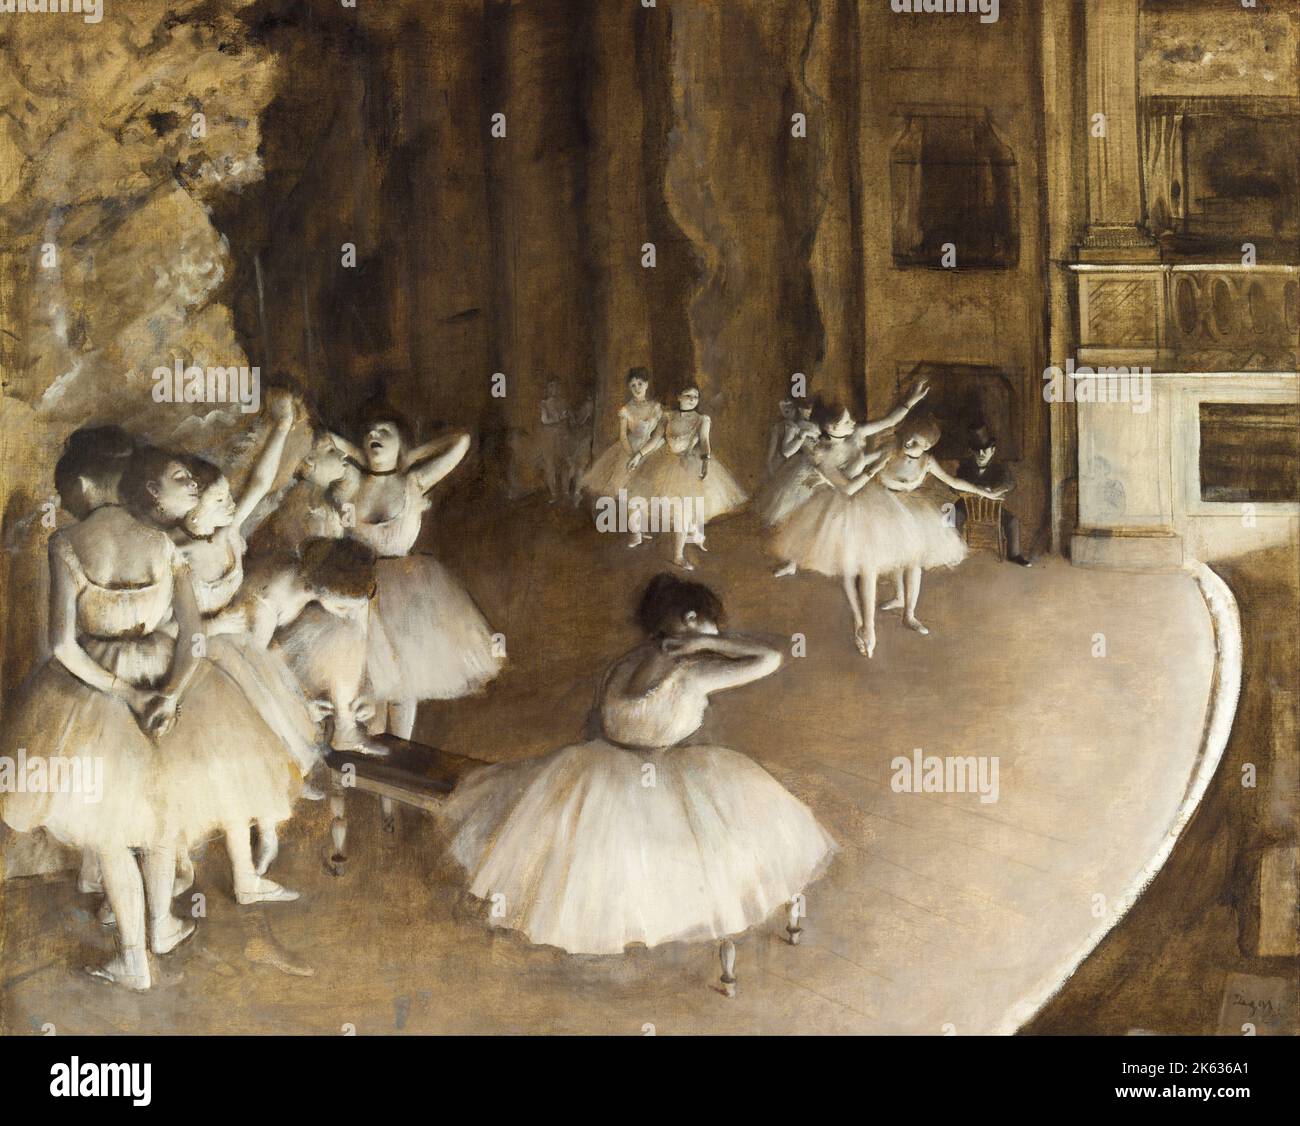 Ensayo sobre el escenario, 1874, pintura de Edgar Degas Foto de stock